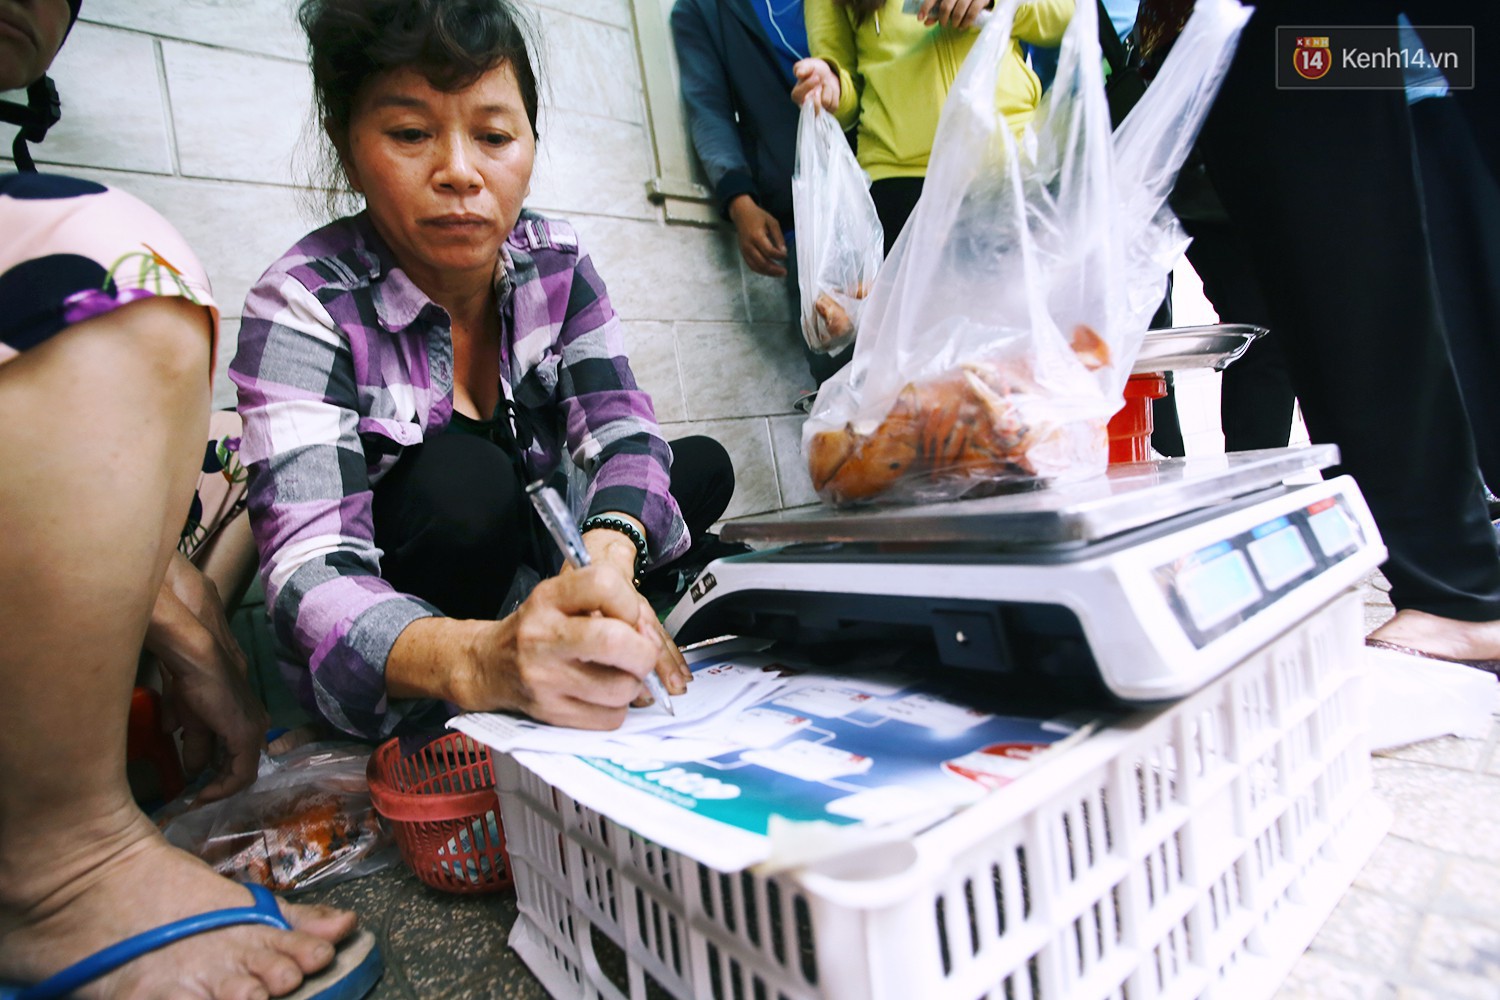 Cận cảnh người Sài Gòn chờ hàng giờ đồng hồ, tranh mua mâm cua dì Ba chỉ bán 10 phút là hết sạch - Ảnh 10.